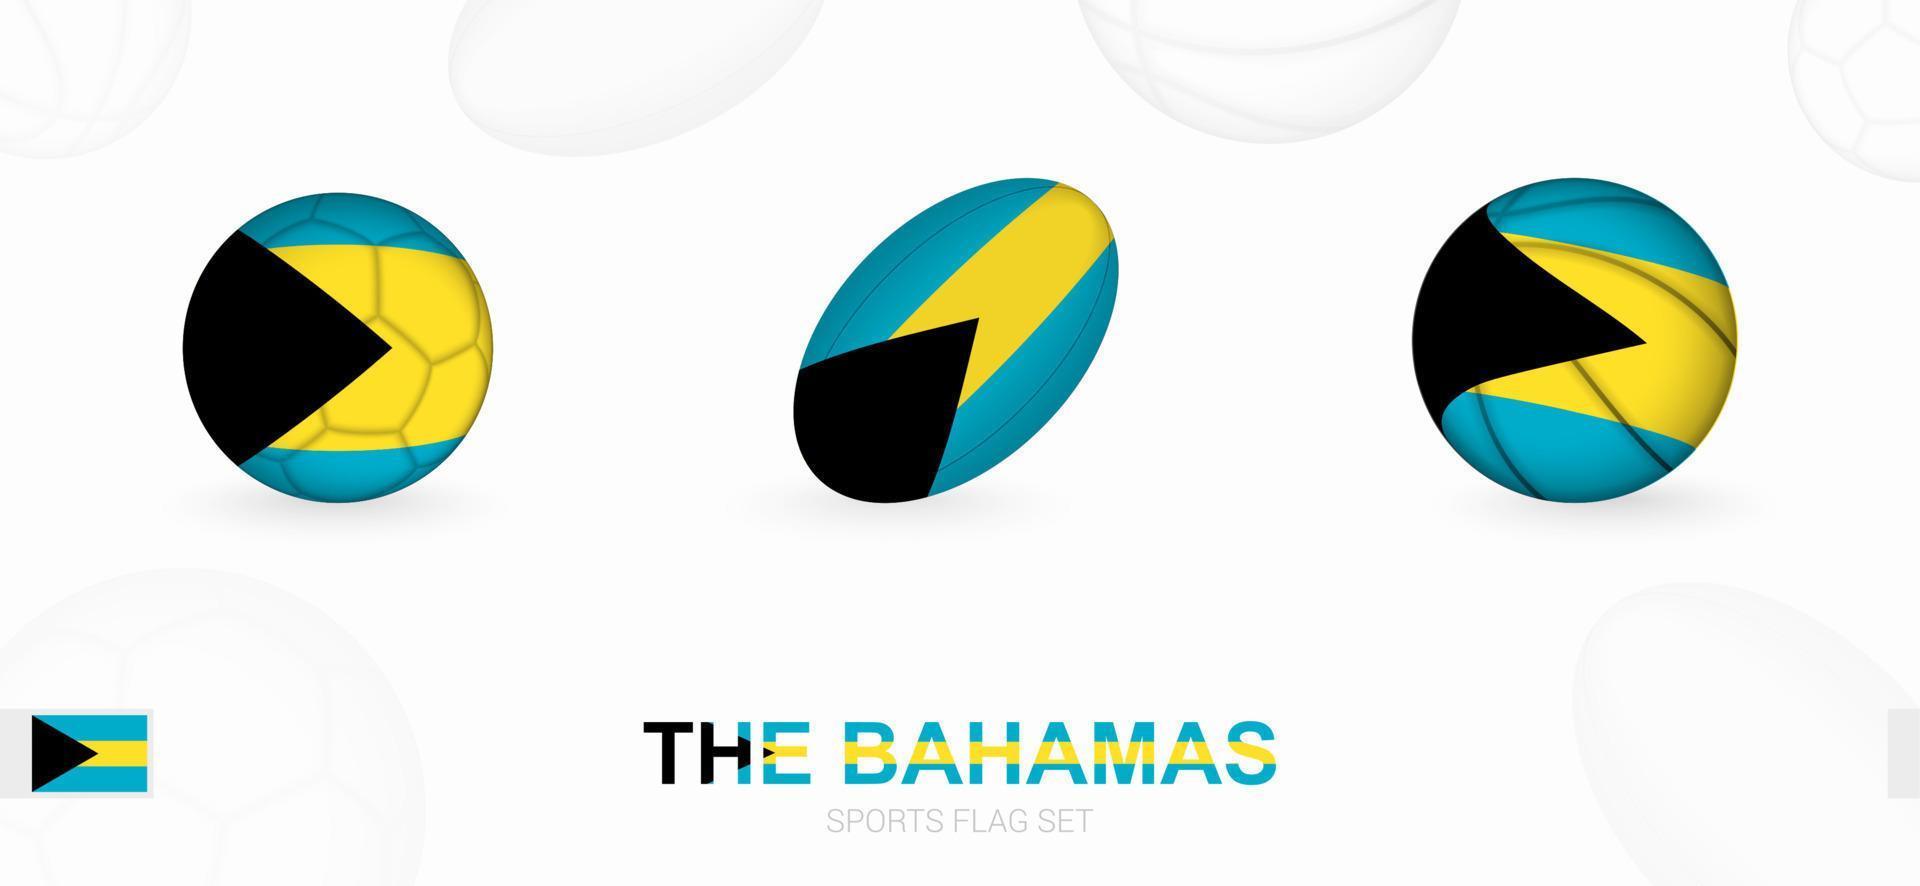 Deportes íconos para fútbol, rugby y baloncesto con el bandera de el bahamas vector